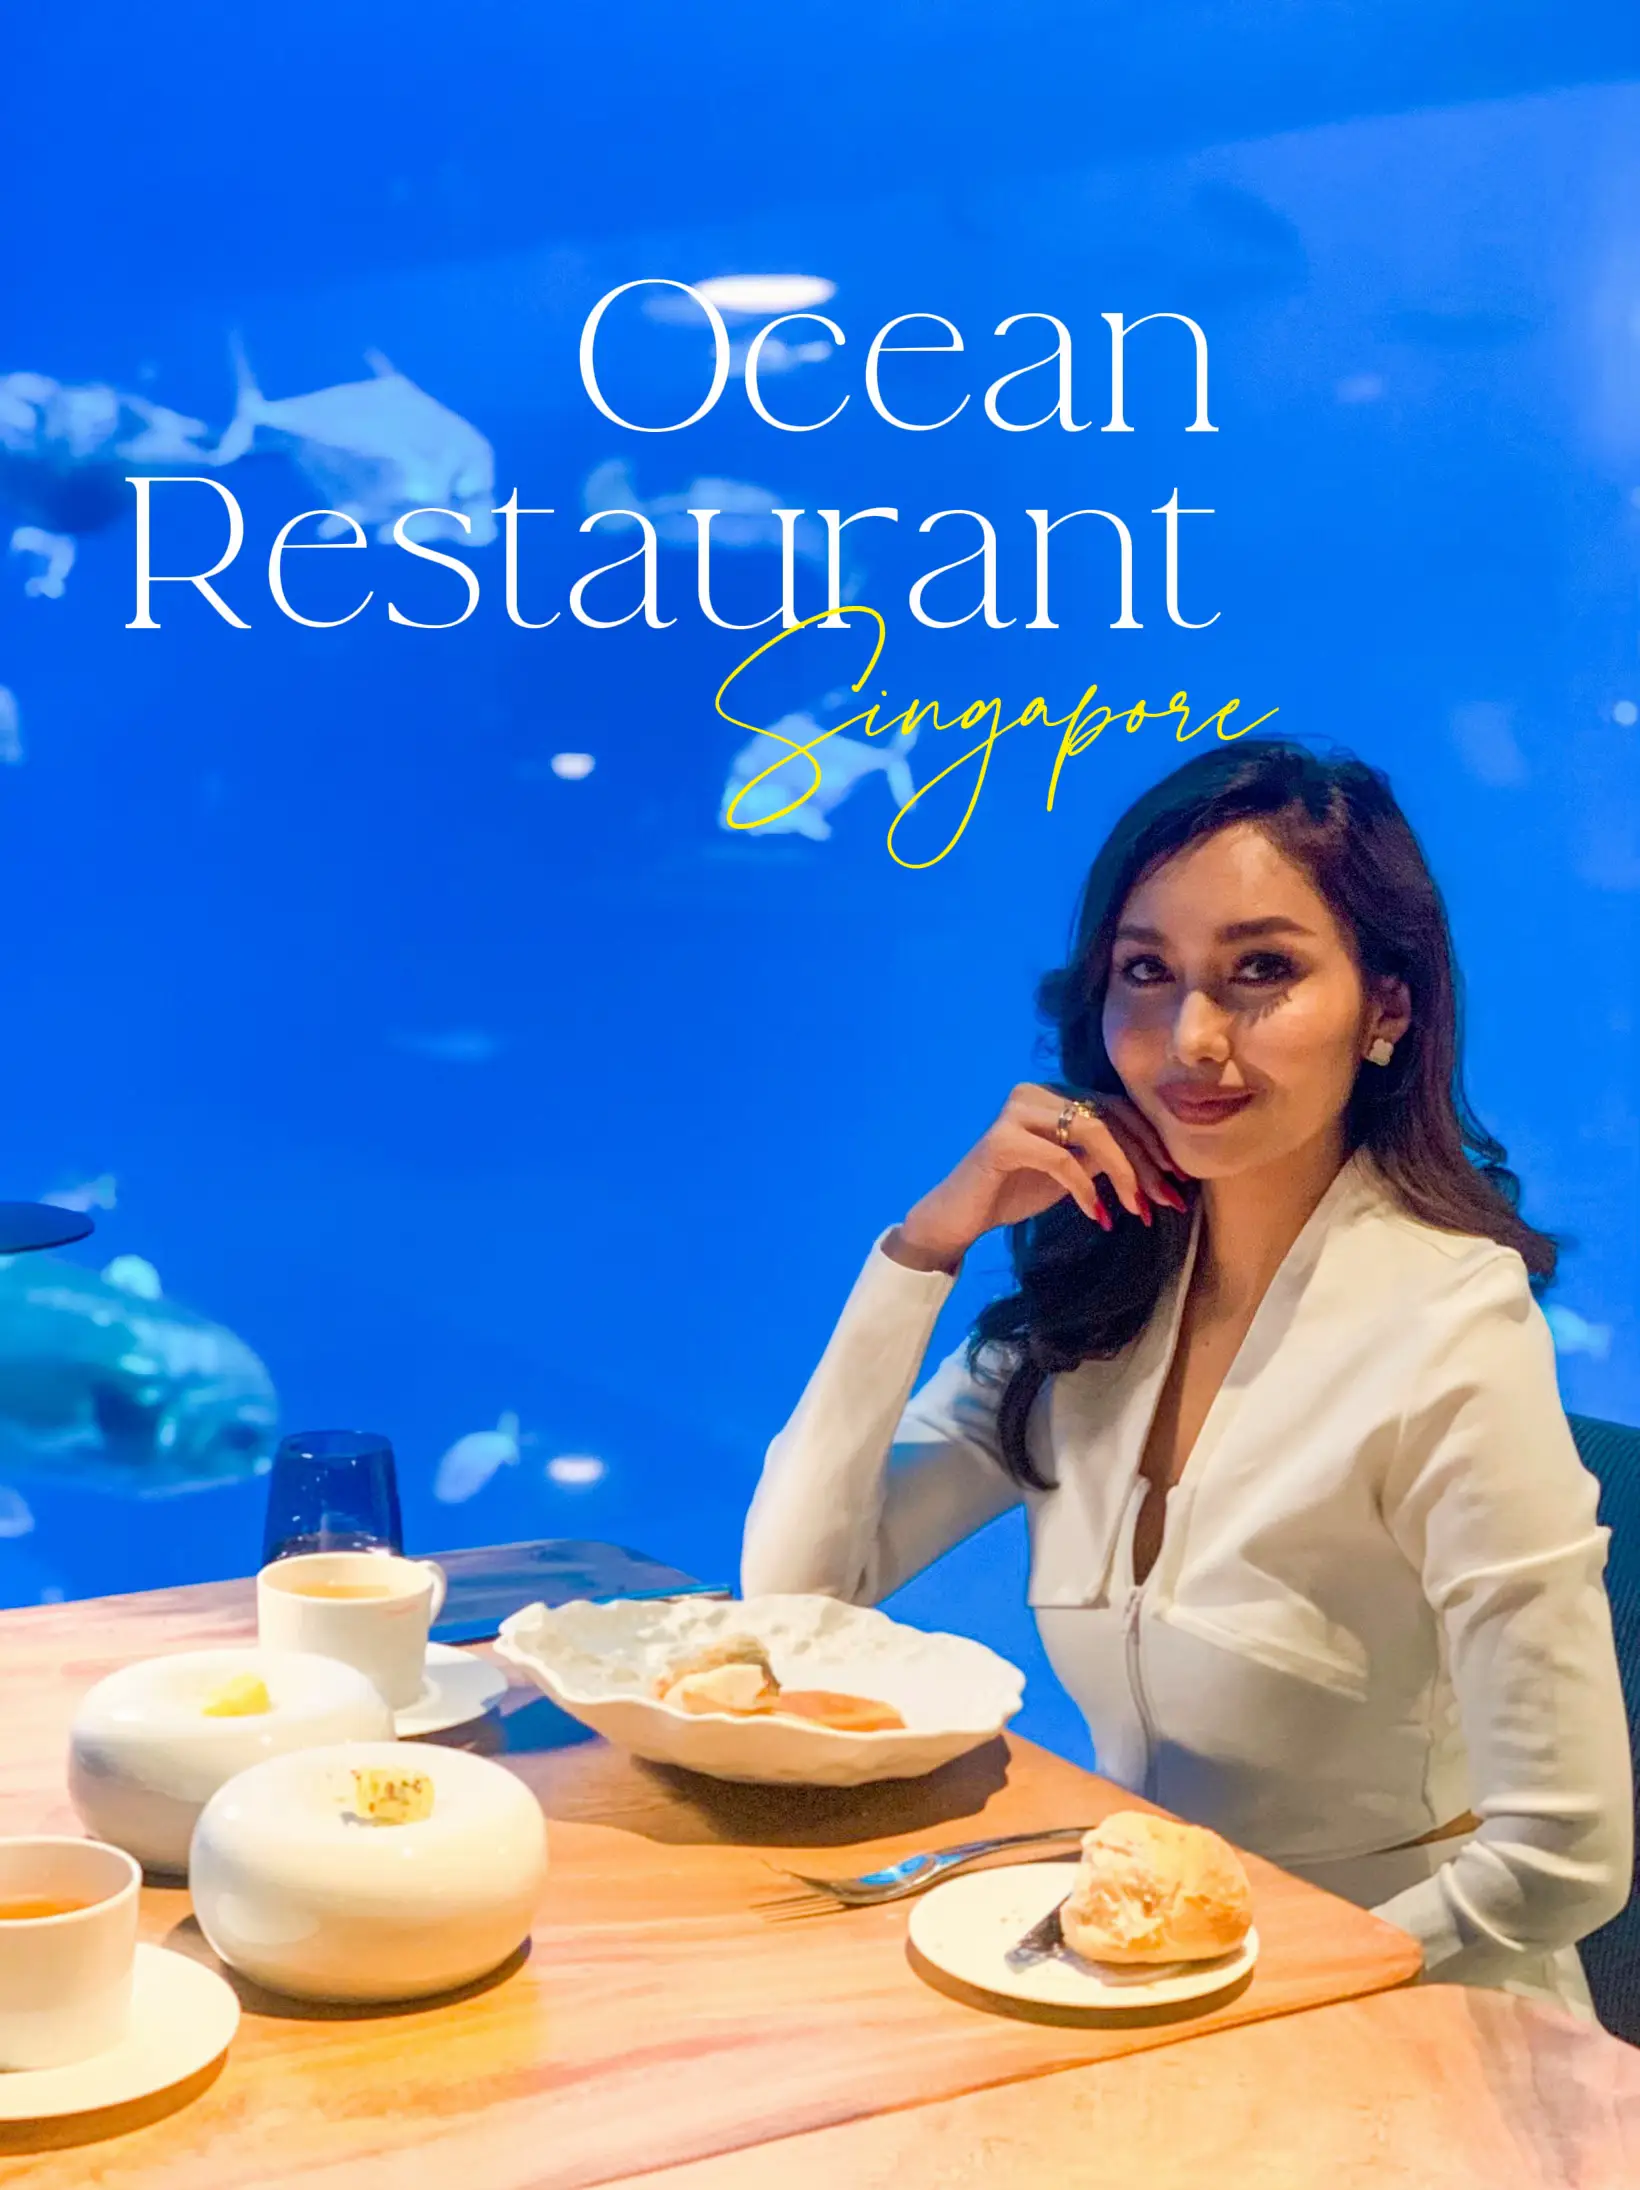 ทานอาหารมื้อหรูกับฝูงปลาที่ Ocean Restaurant Singapore 's images